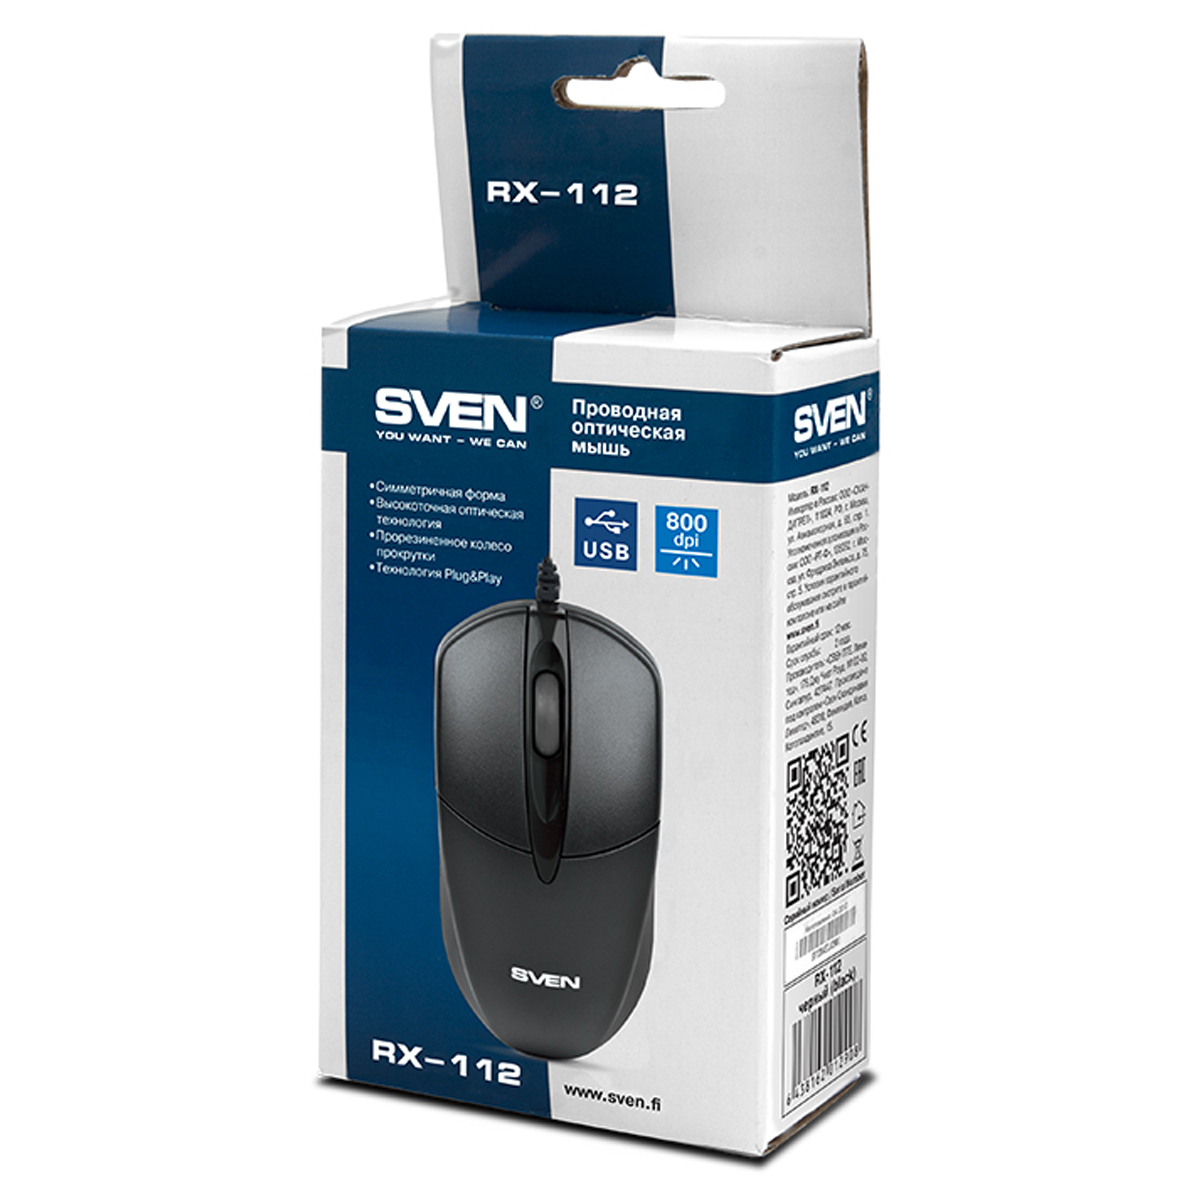 Мышь Sven RX-112, USB, черный, 2btn+Roll